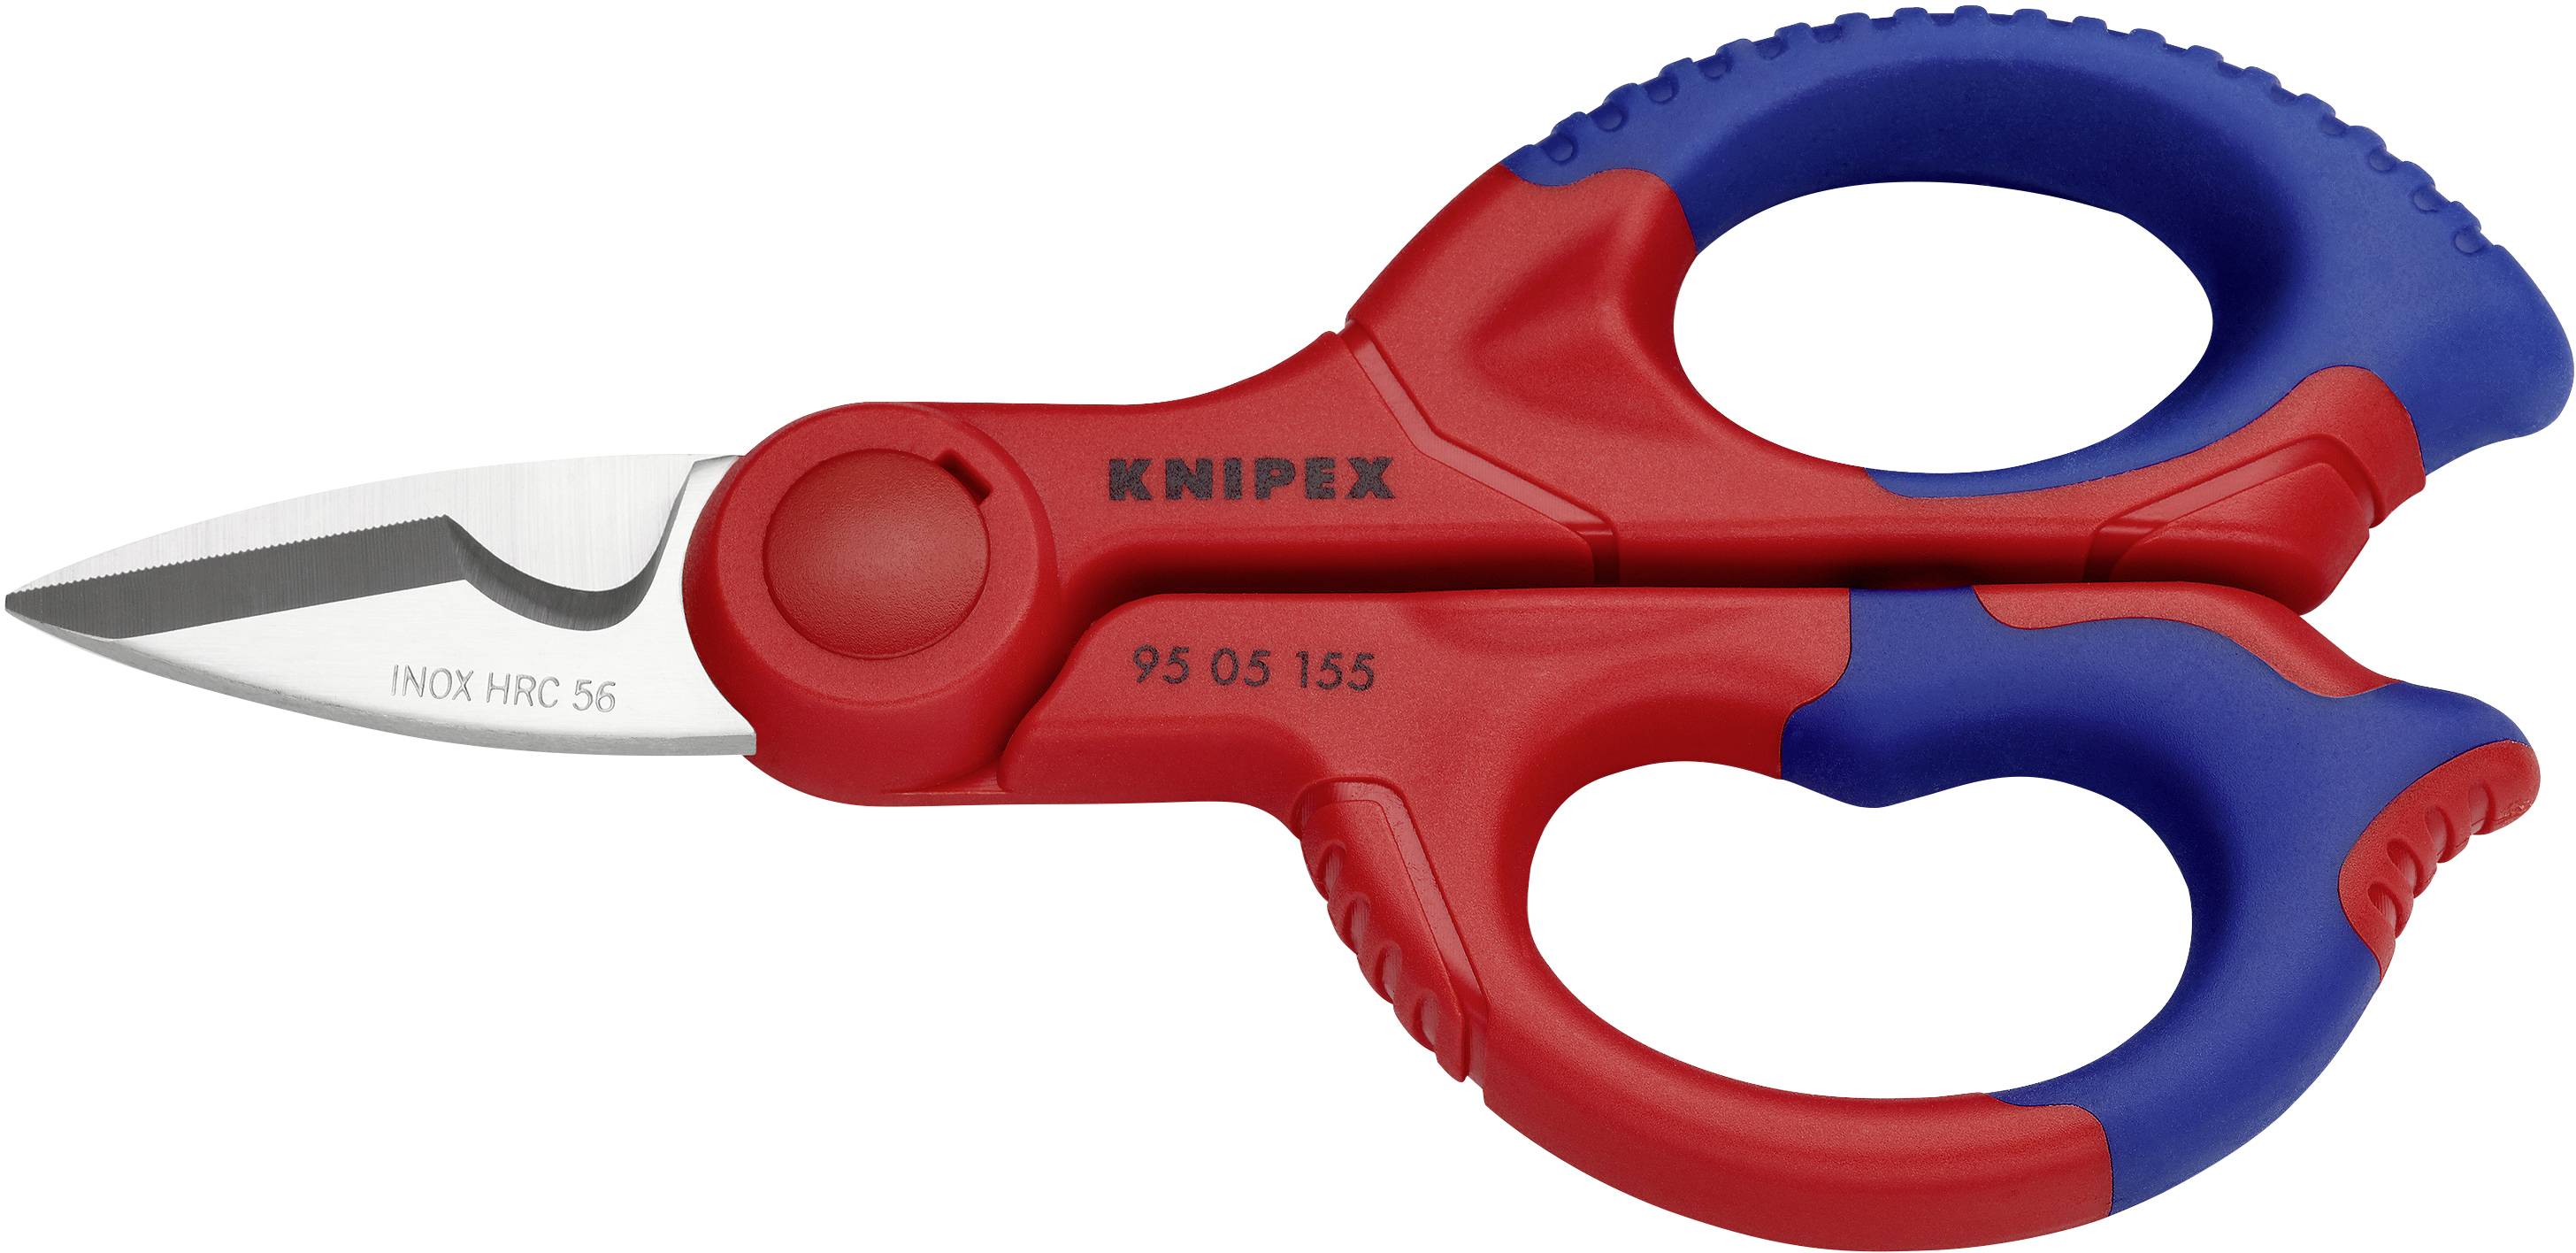 Knipex 95 05 155 SB - Ciseaux d'Électricien